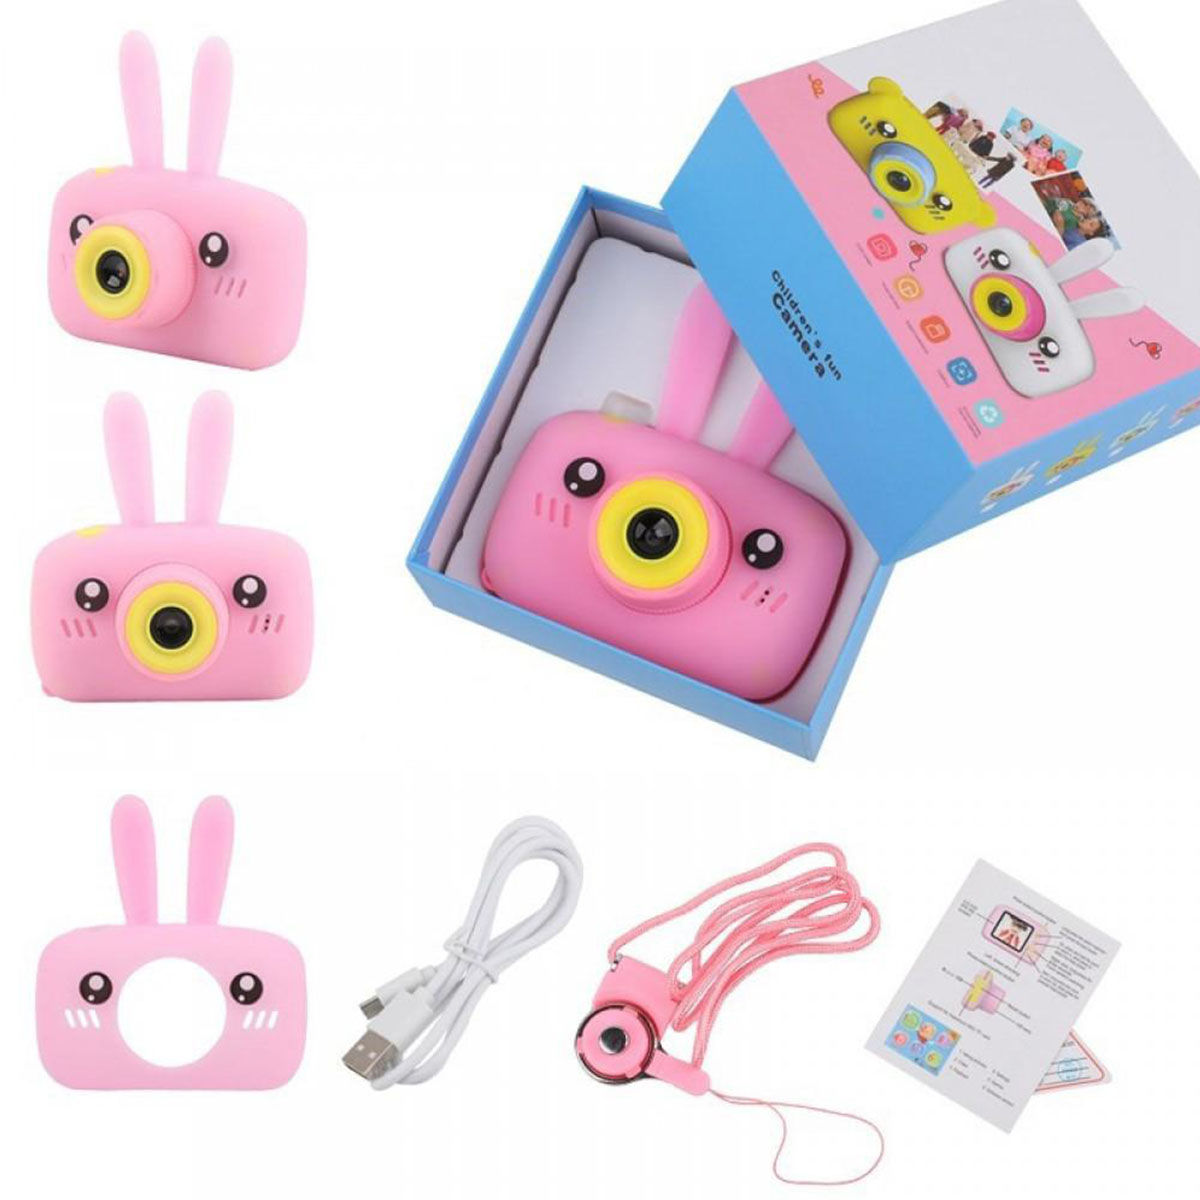 Детский цифровой фотоаппарат (игрушка), портативный, Зайчик, цвет розовый